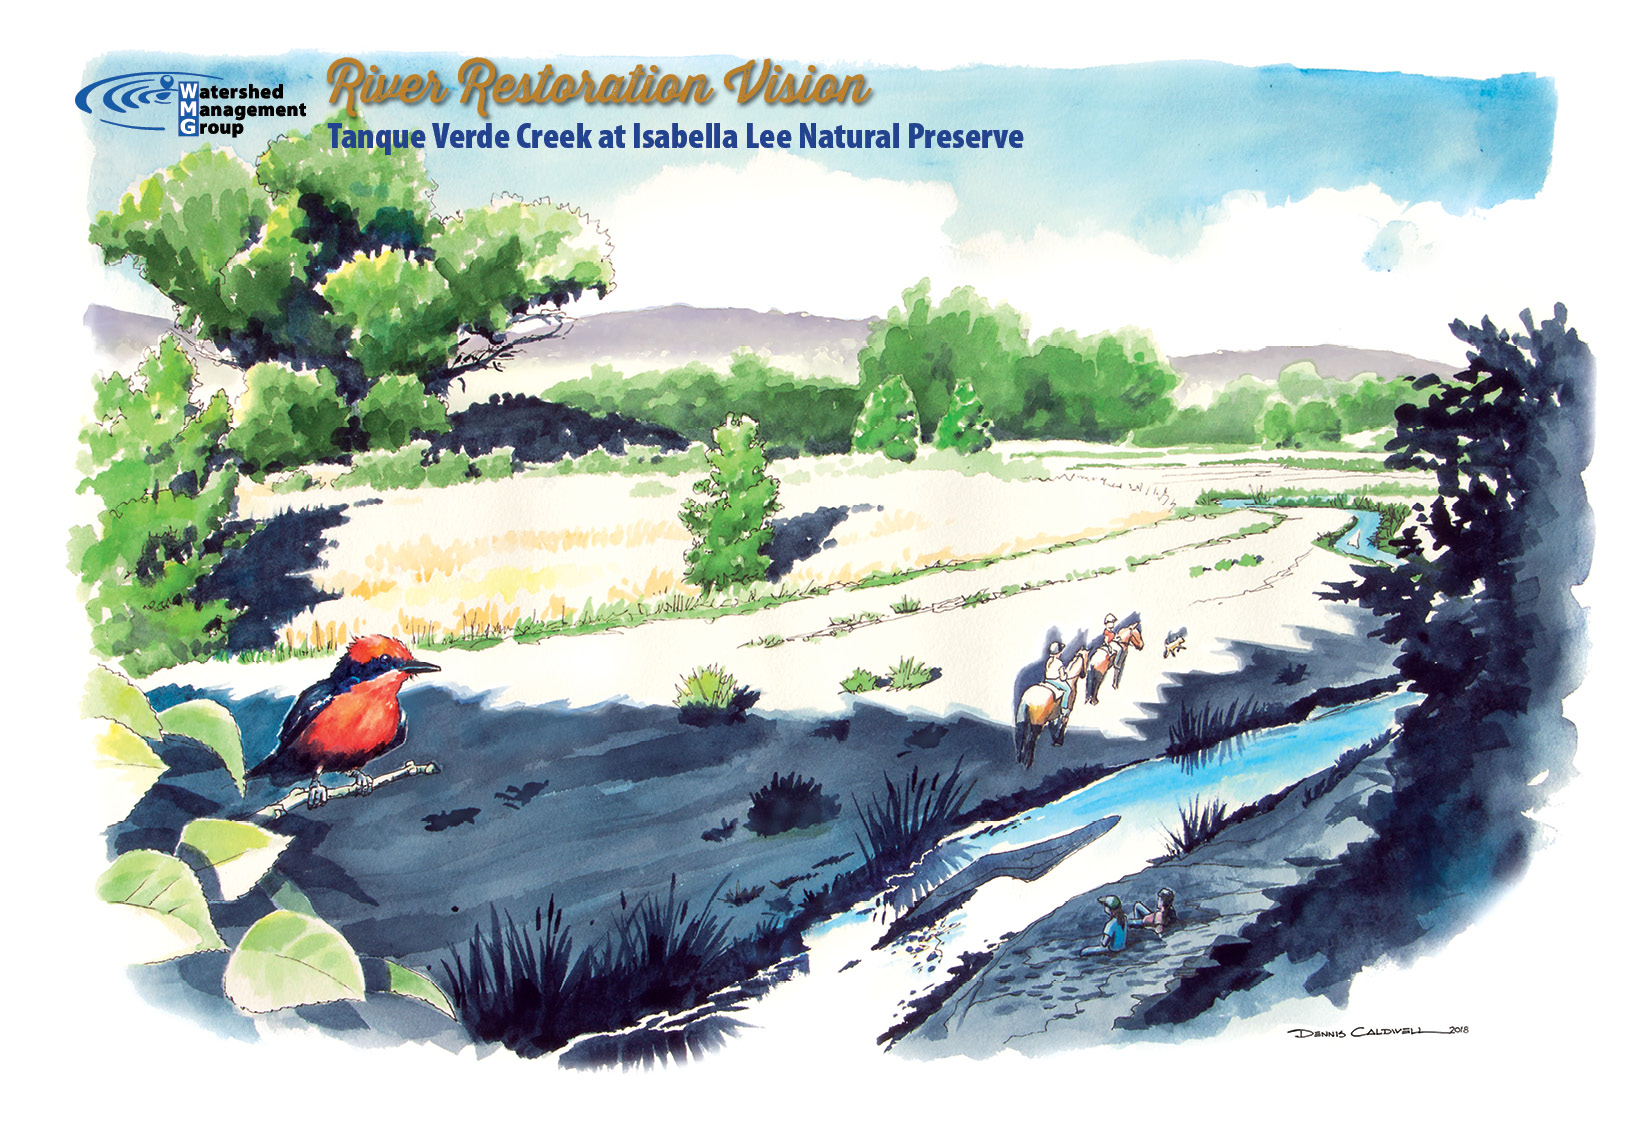 River restoration vision - Tanque Verde Creek at Isabella Lee Natural Preserve